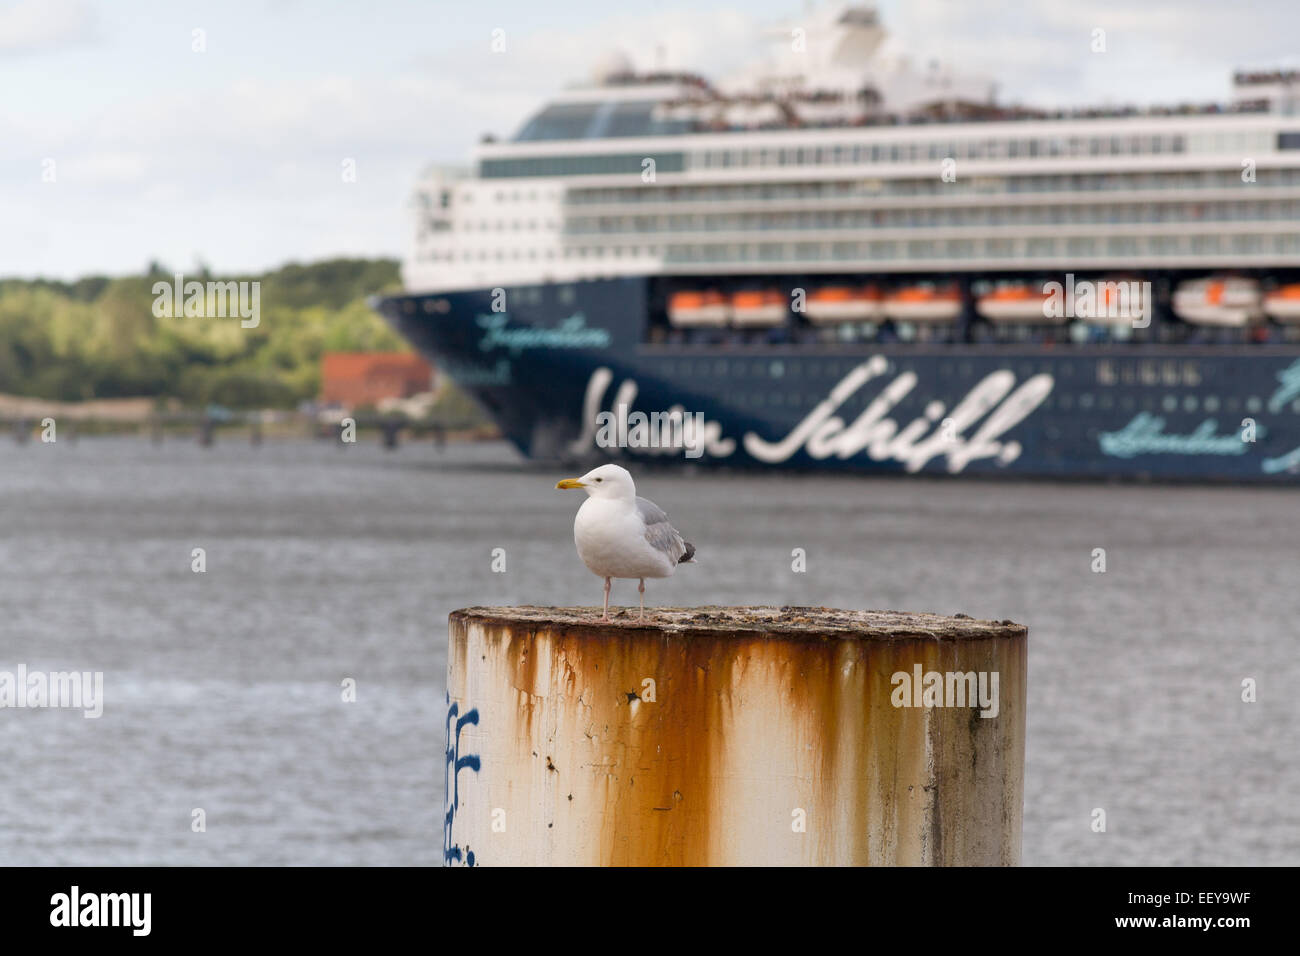 Kiel, Alemania, Mein Schiff 2 fuga en el fiordo de Kiel Foto de stock